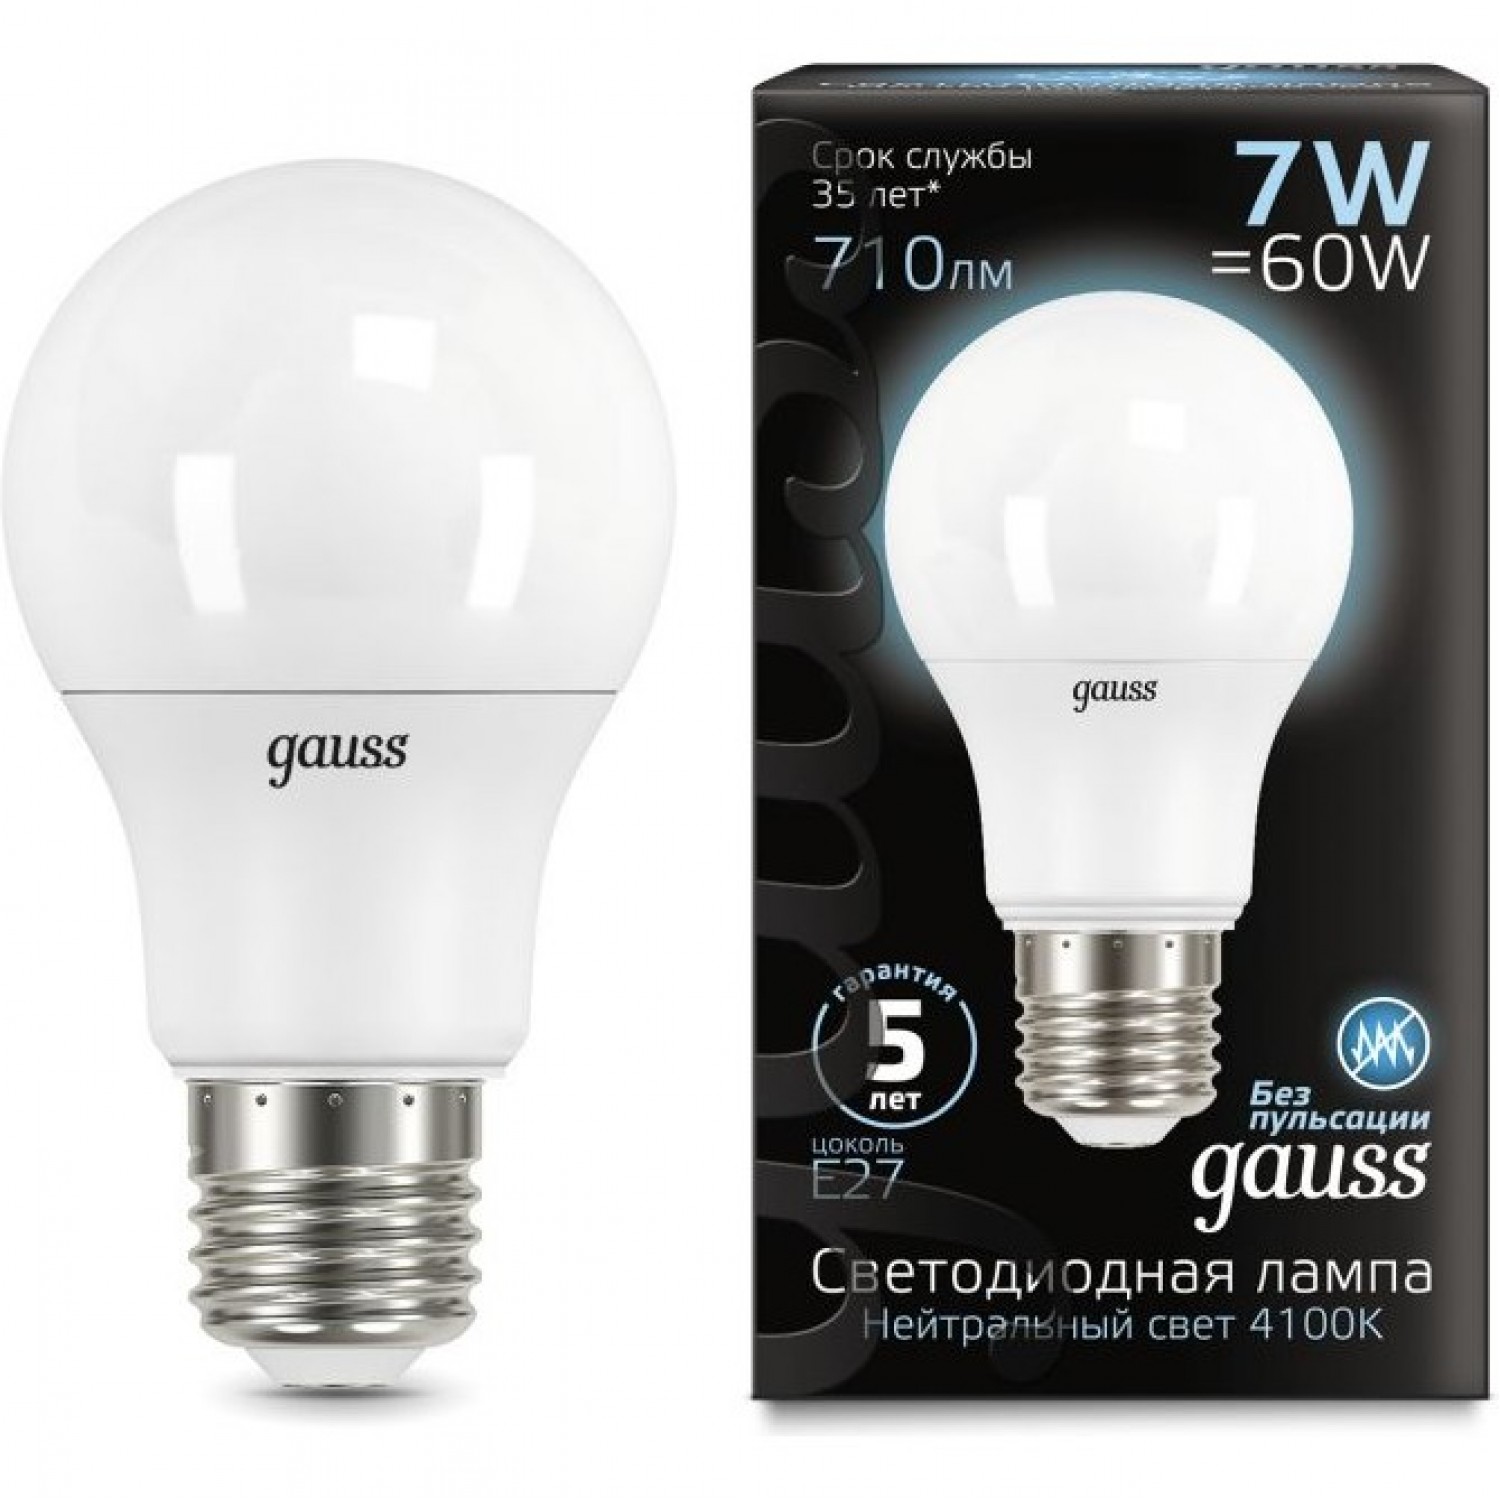  GAUSS BLACK LED A60 E27 7W 4100K 102502207. Купить Лампы на .